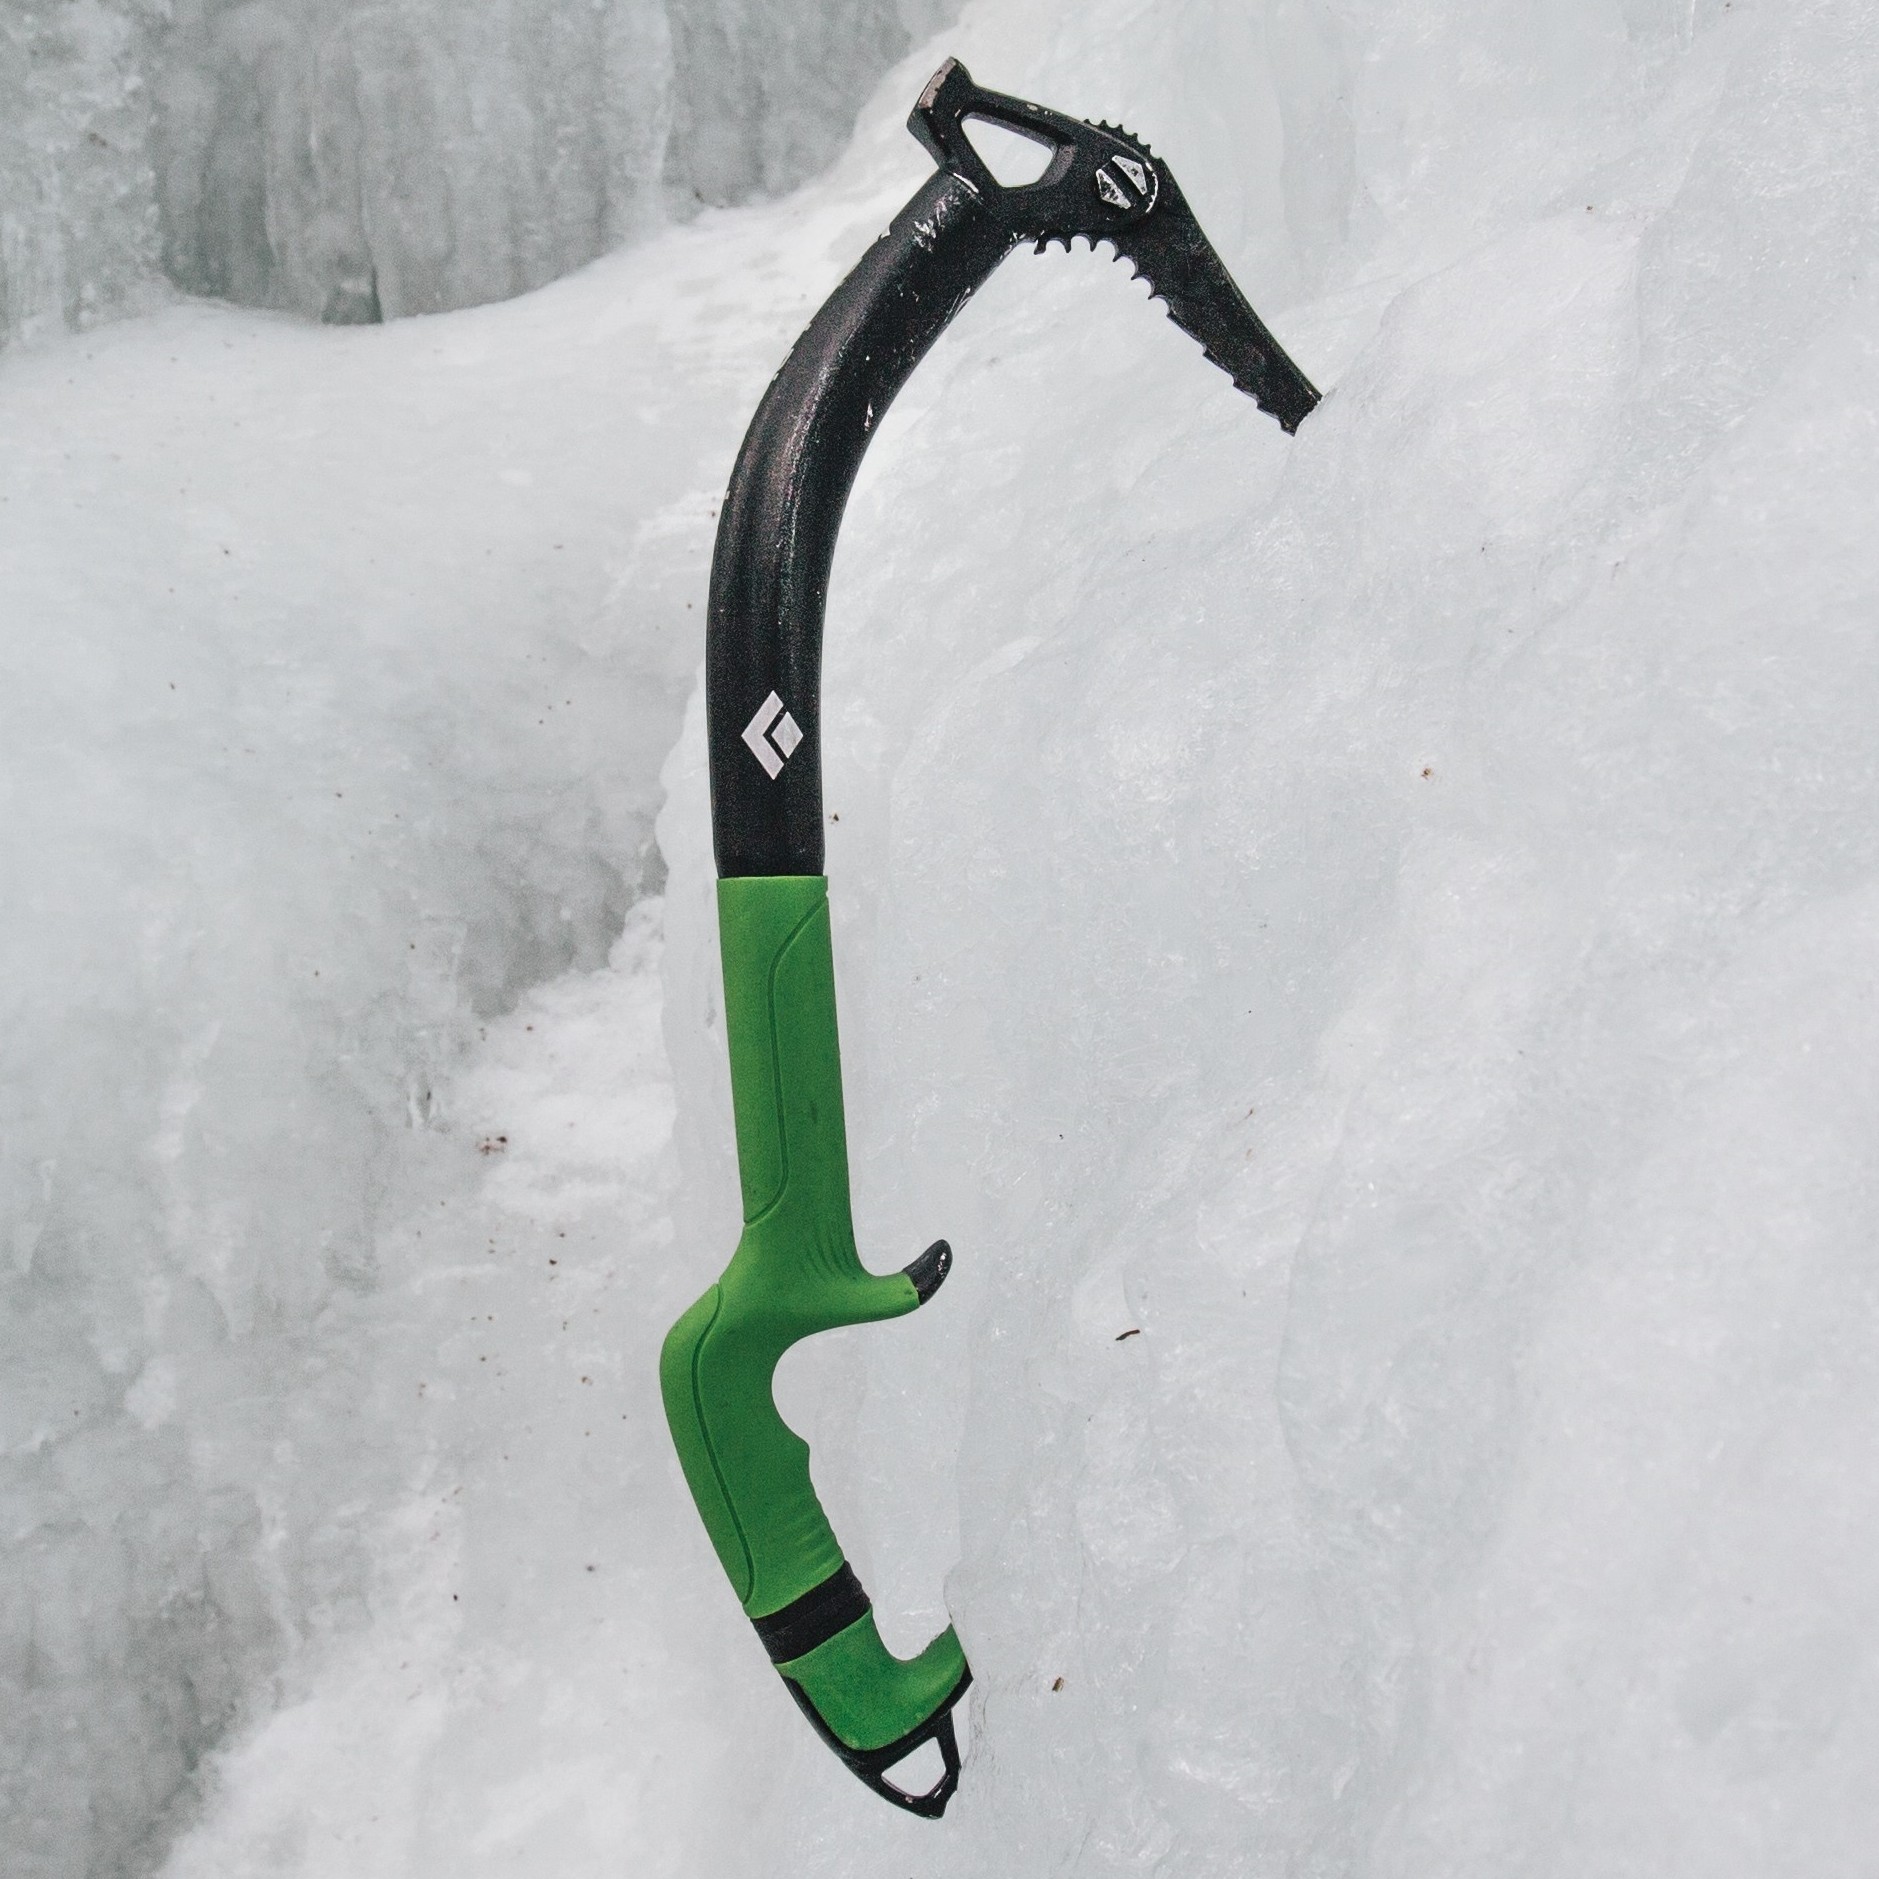 Black Diamond Fuel Ice Tool Mountaineering Ice Axe